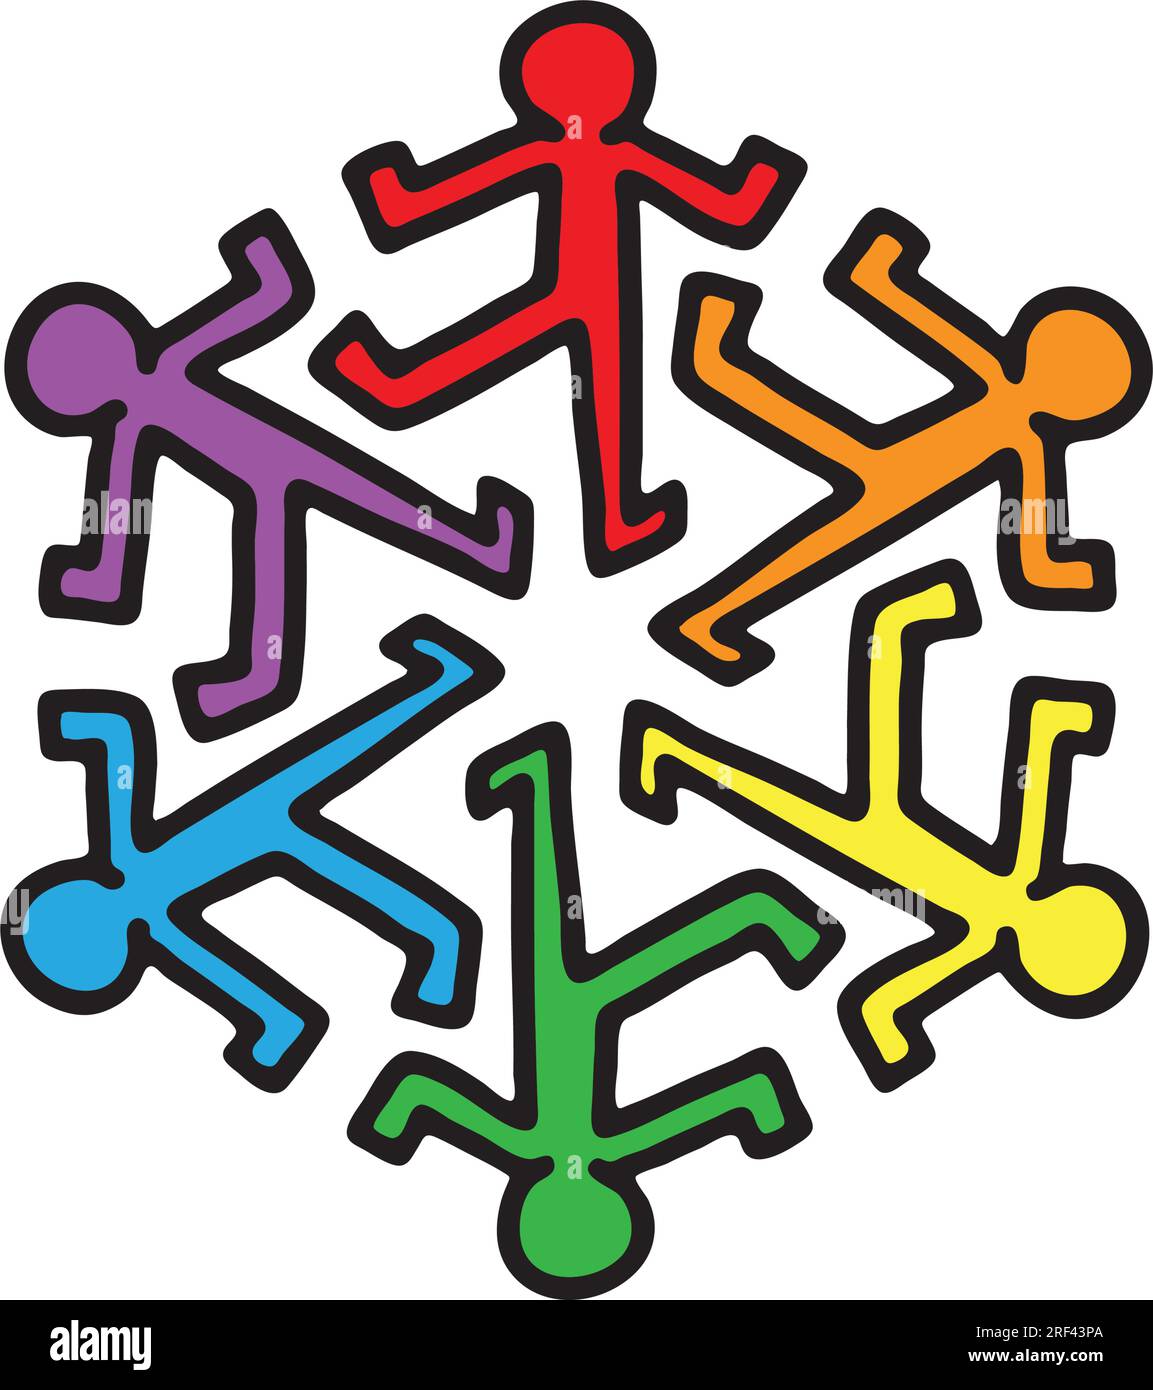 graphique vectoriel représentant un groupe dynamique de personnes dansant sur un pied, représentant la cohésion et l'éco-conscience Illustration de Vecteur